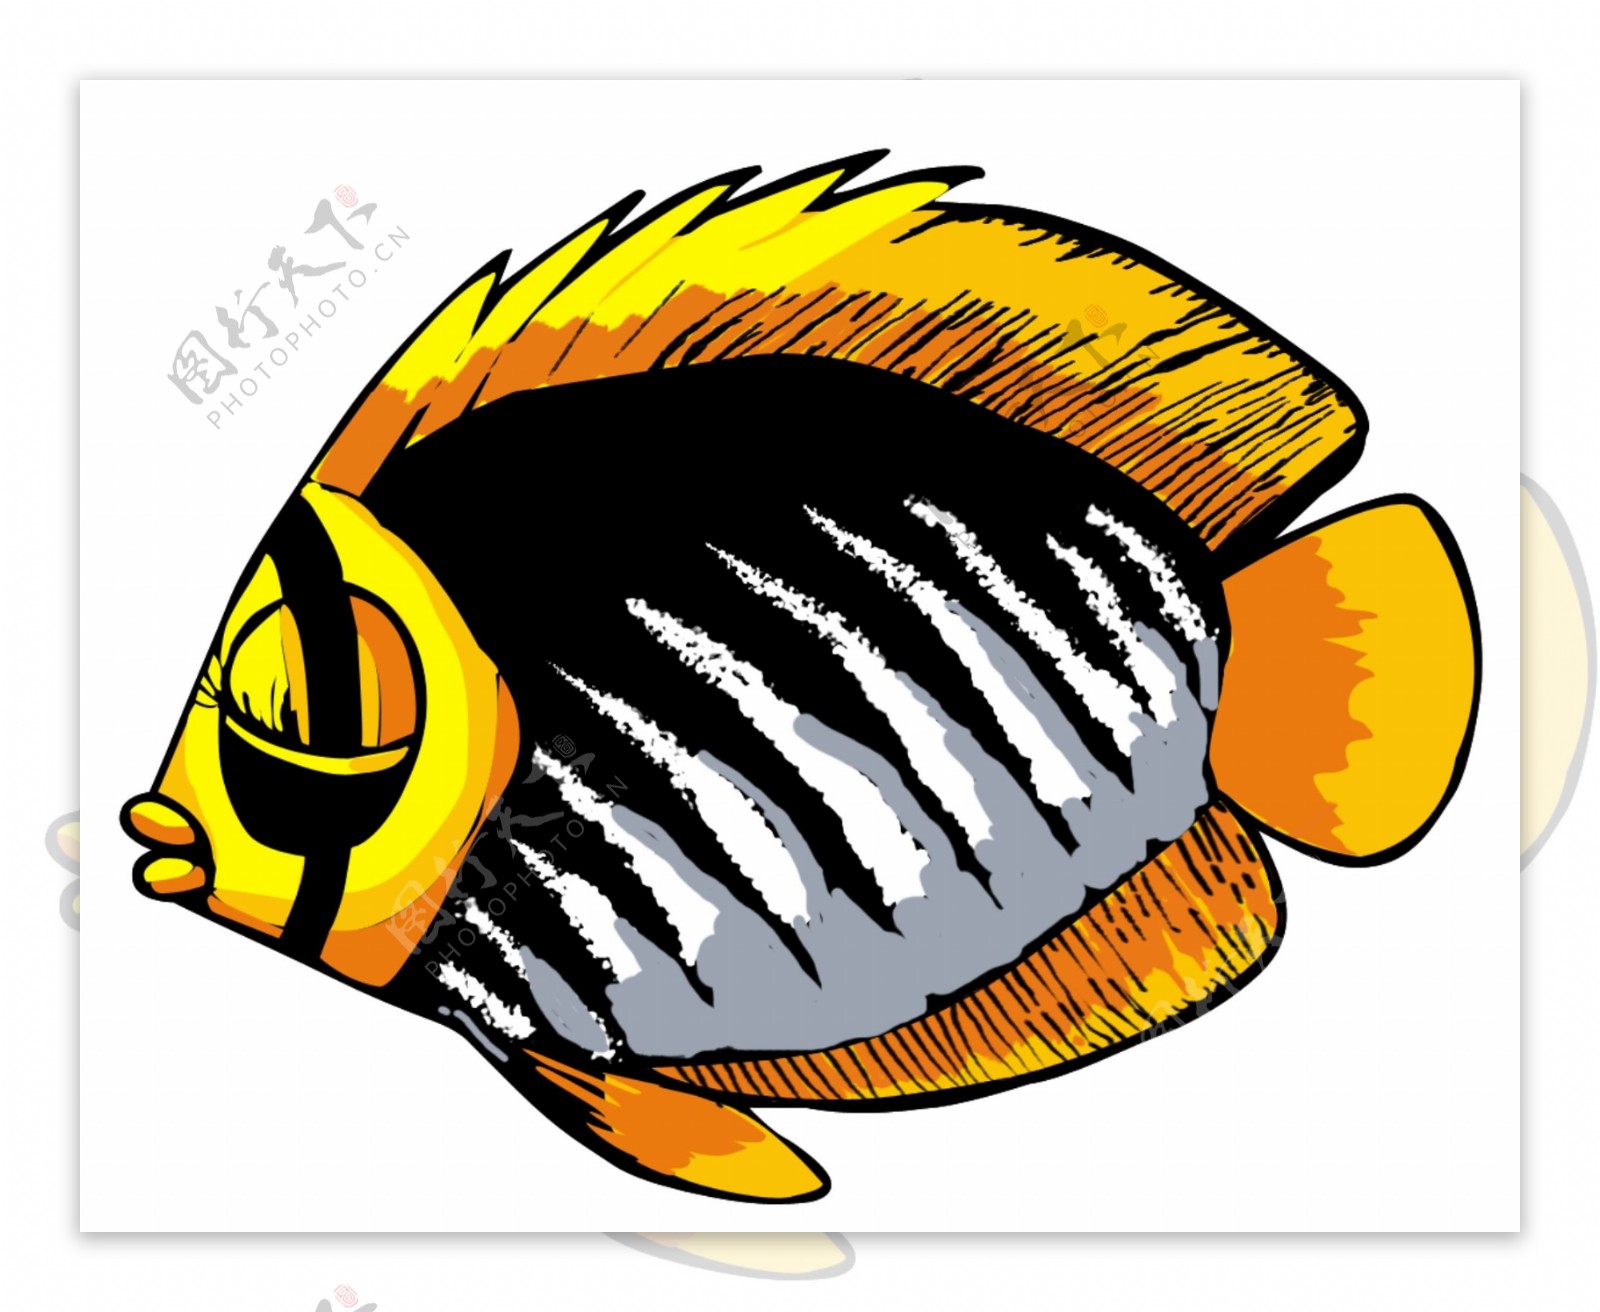 卡通热带鱼